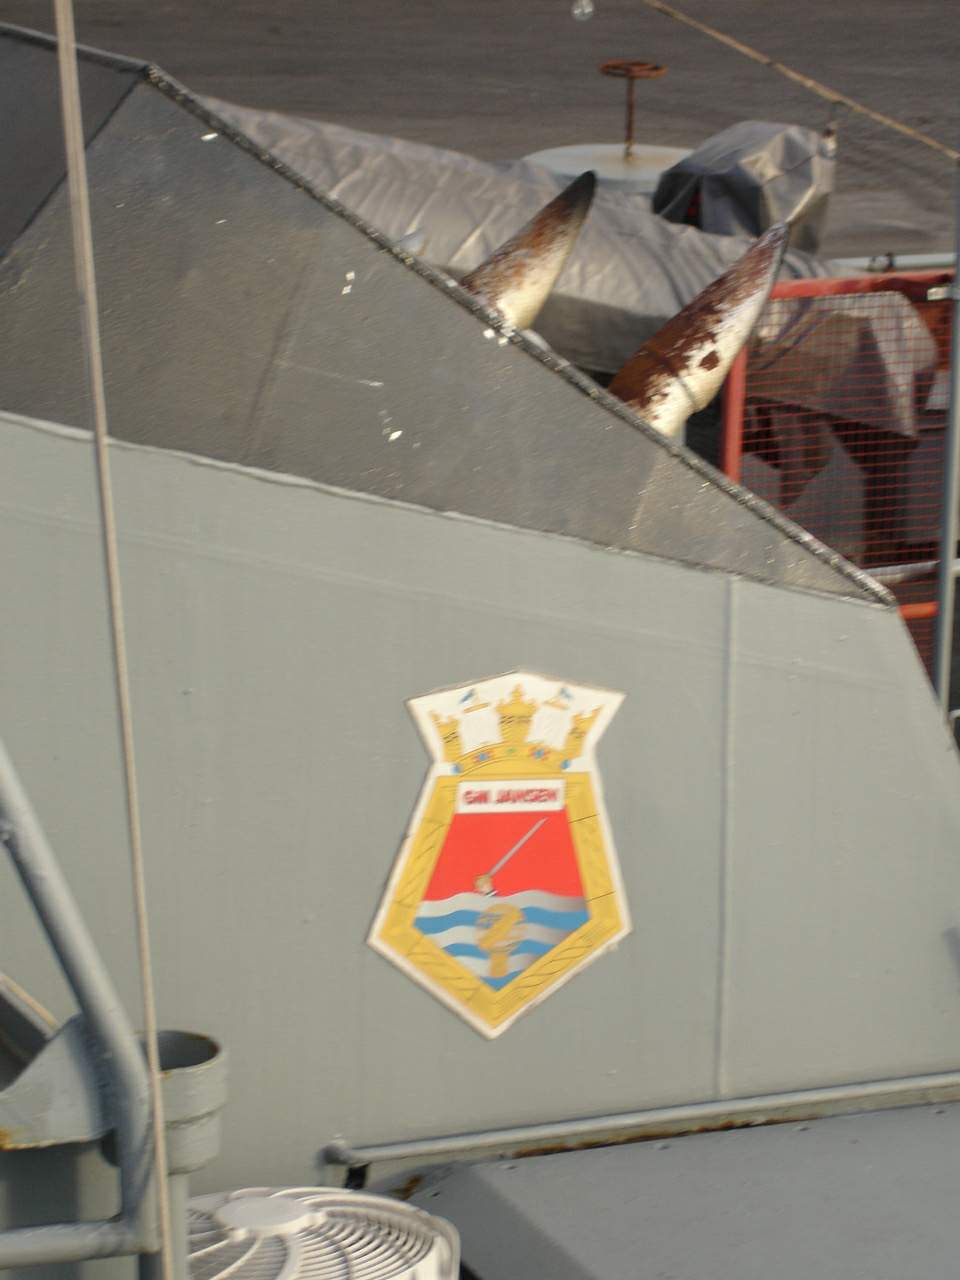 Detalhe do brasão na chaminé do navio. (foto: Milton Lima - Salvador - 16/01/2011)